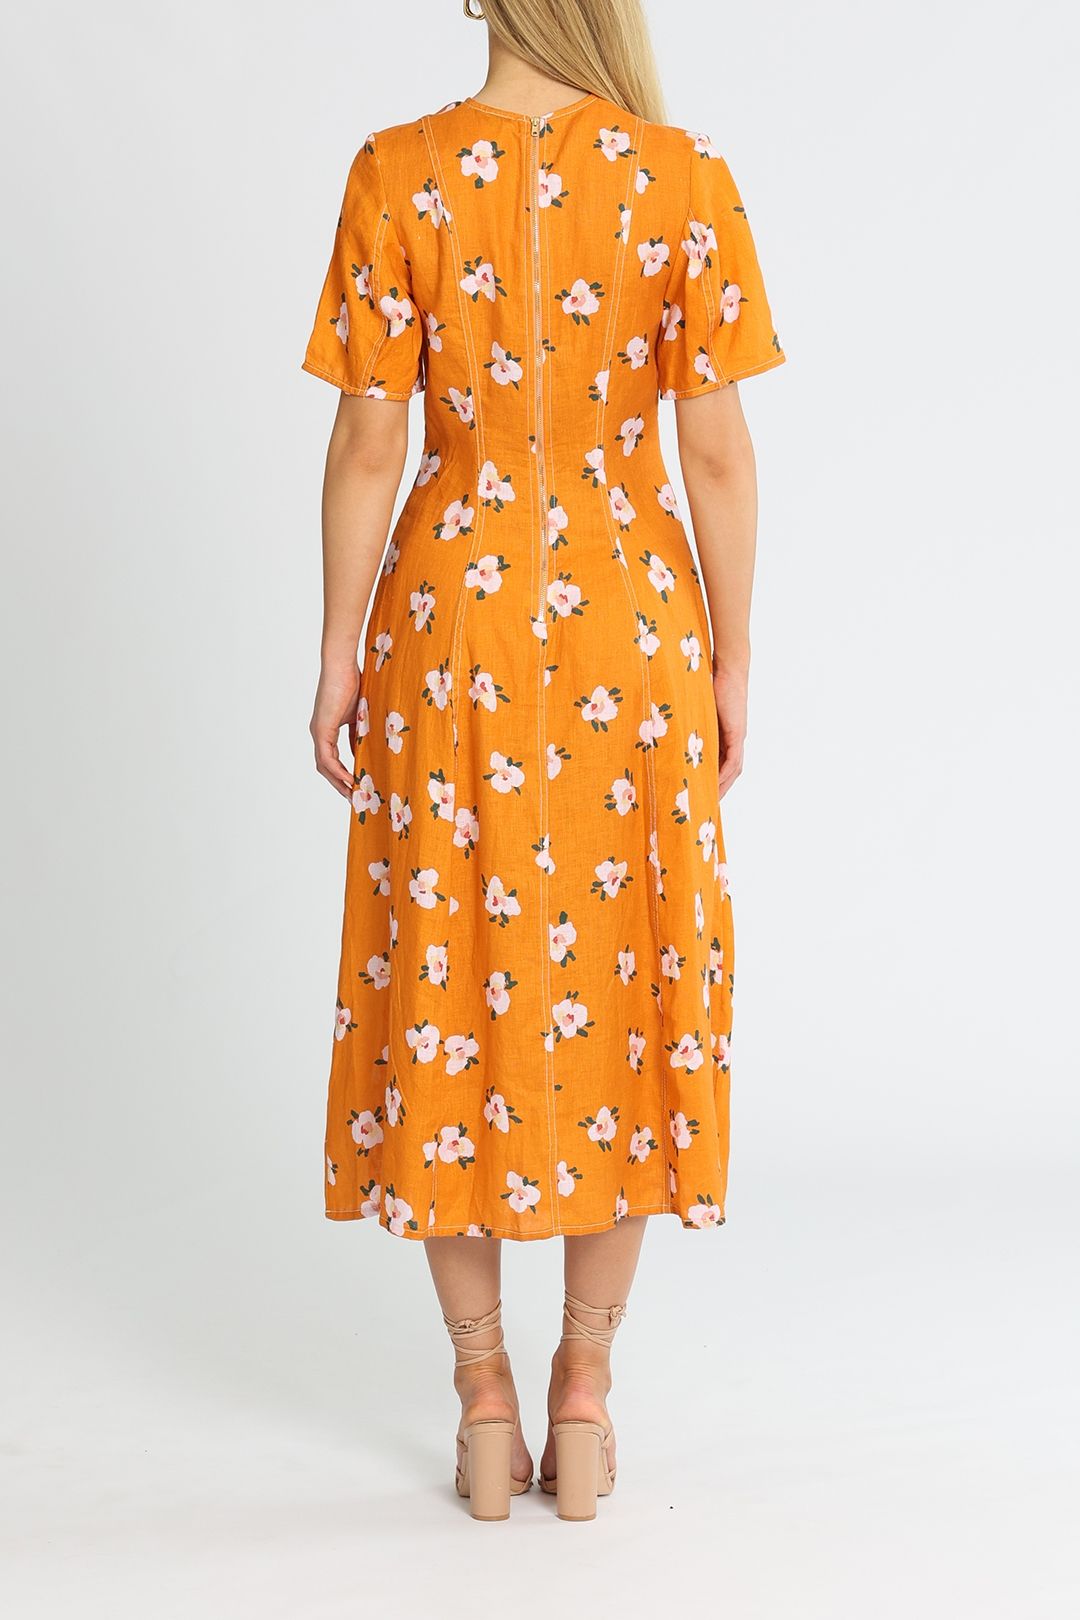 Kate Sylvester Colette Midi Dress in Orange Short Sleeve